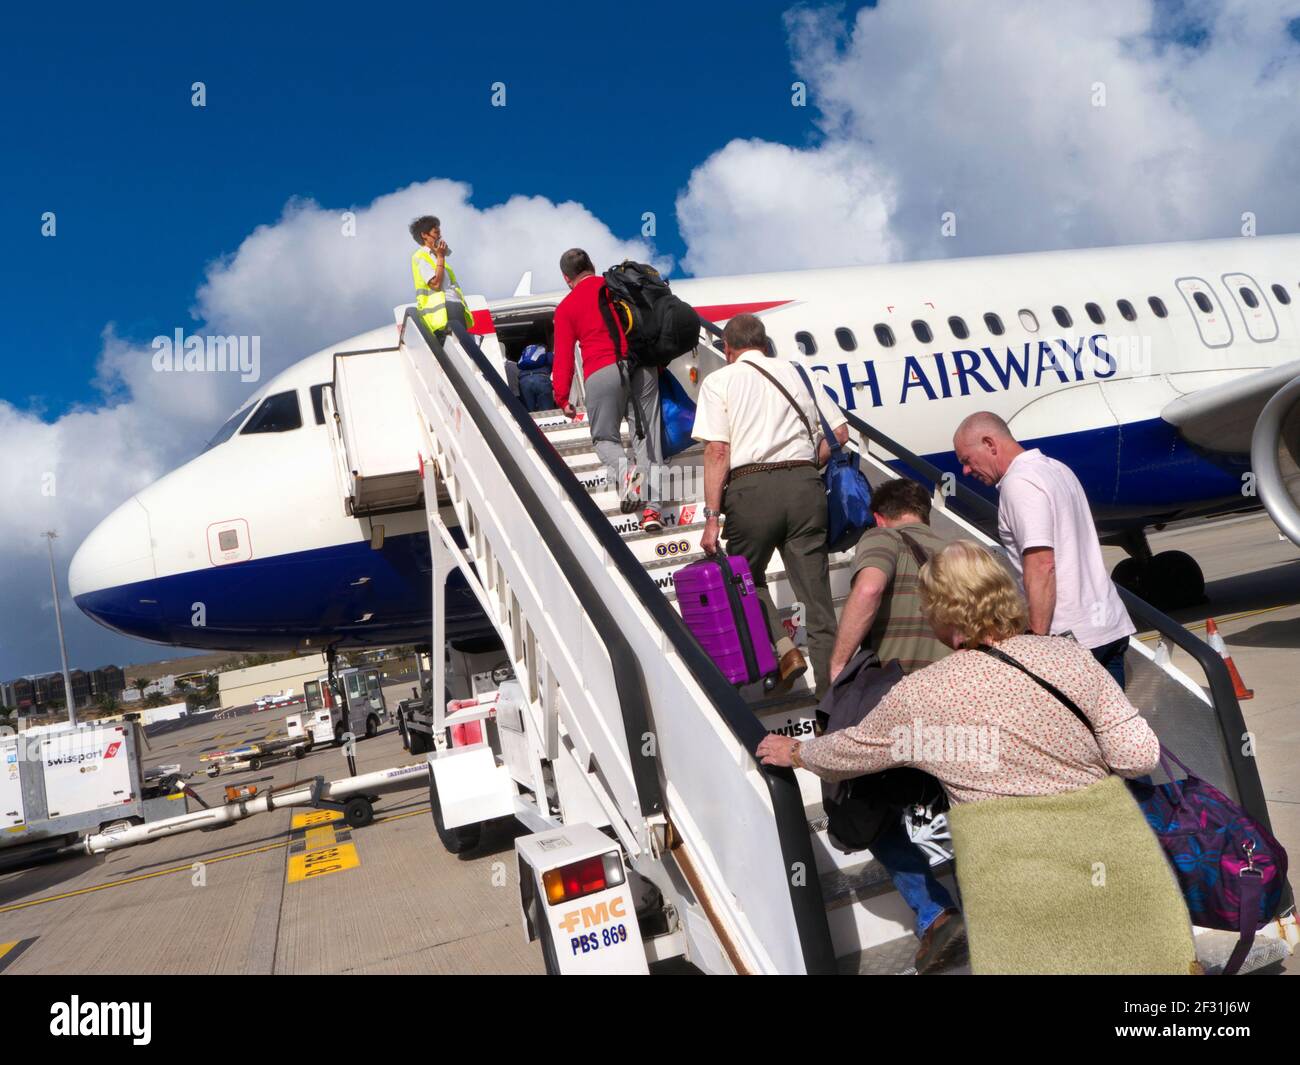 PASSAGIERE, die ein British Airways-Flugzeug über eine Treppe nach vorne besteigen Kabine mit Handgepäck in sonnigen Urlaub blau Himmel Airline Reisekonzept Stockfoto